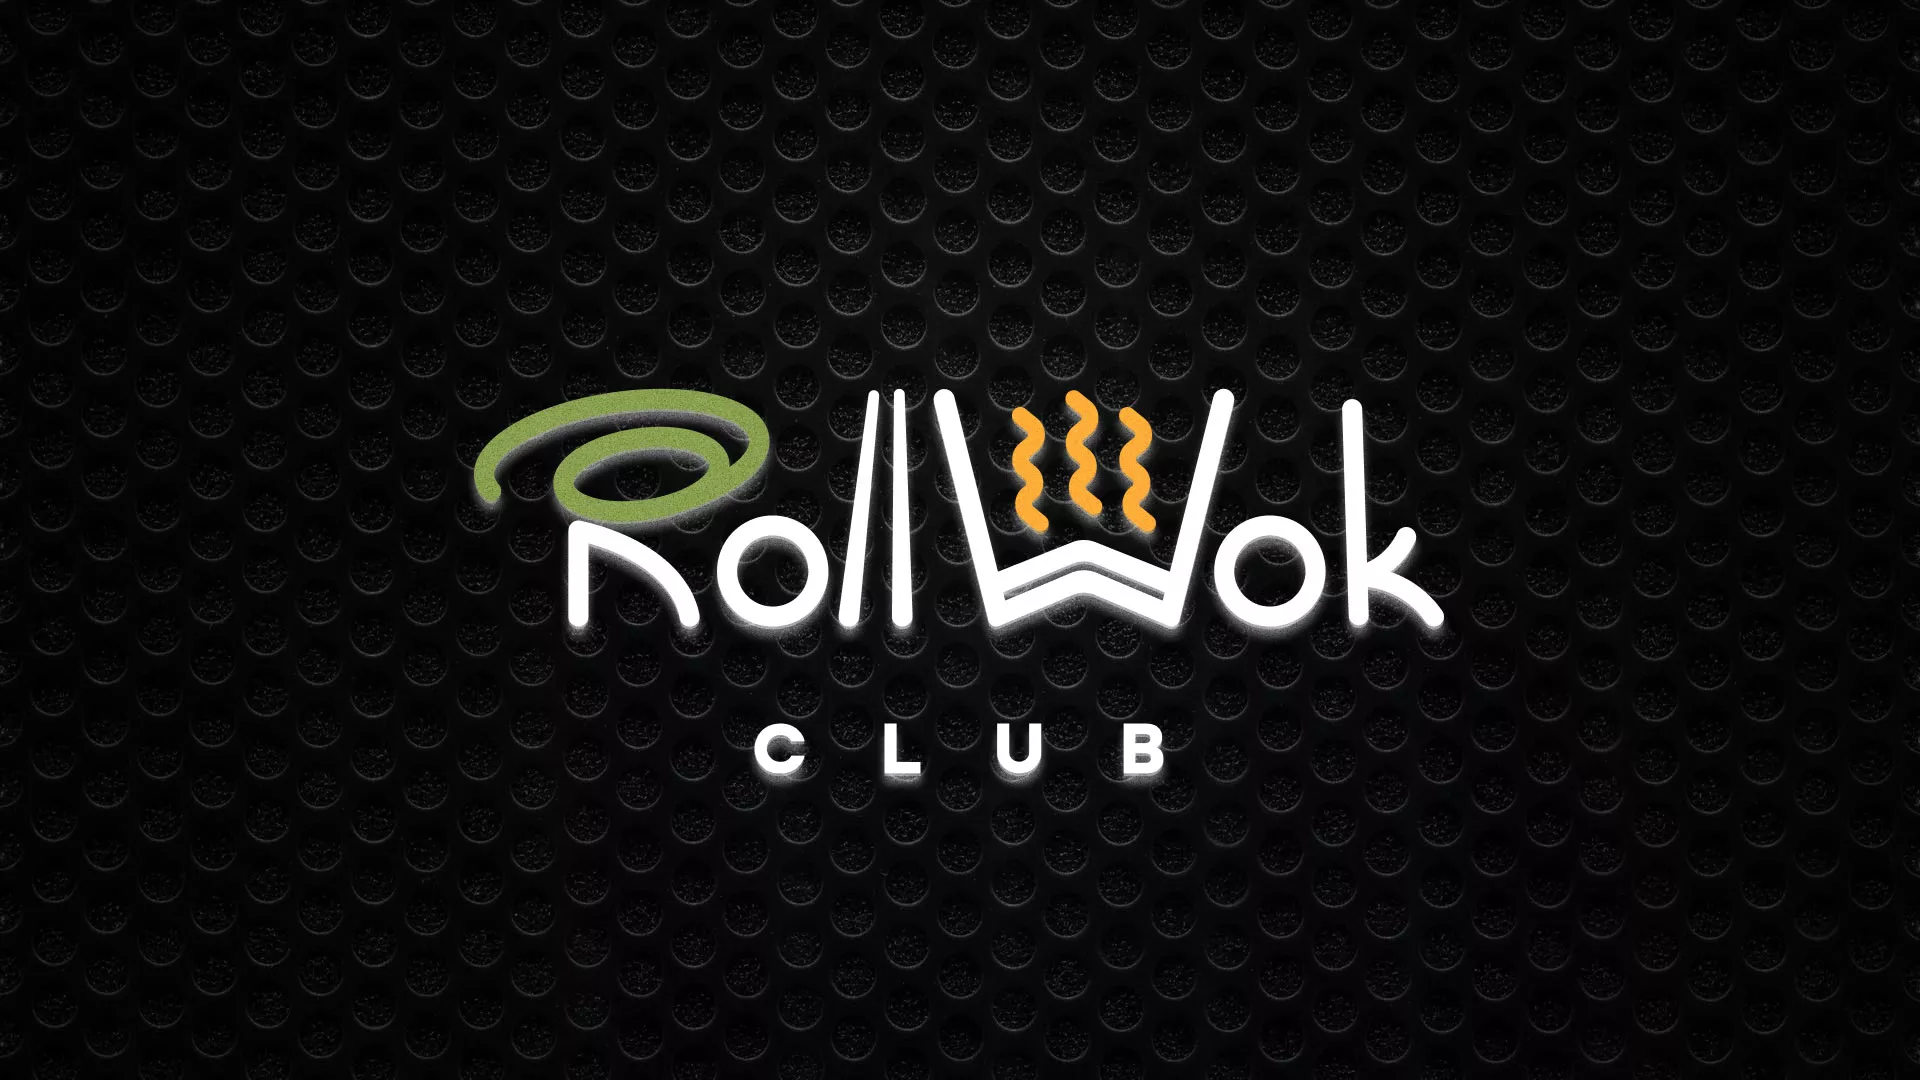 Брендирование торговых точек суши-бара «Roll Wok Club» в Андреаполе